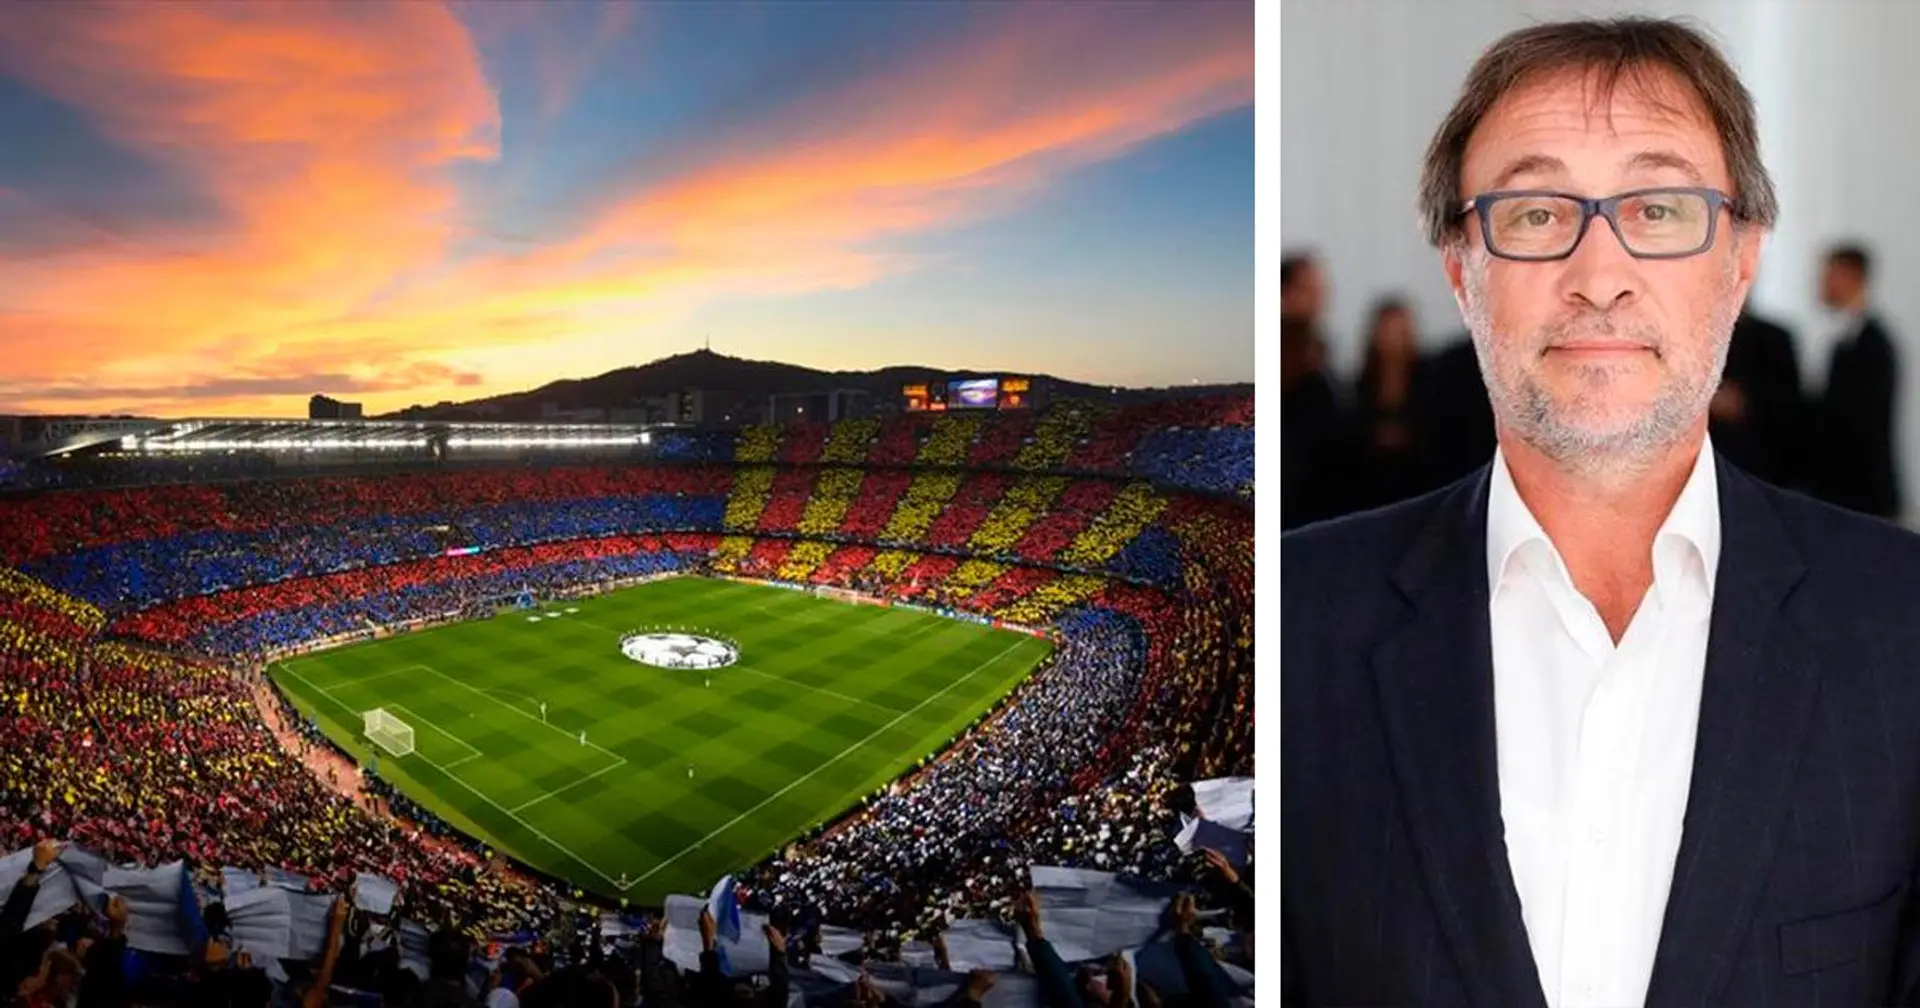 "Nous construirons un nouveau stade" : le candidat à la présidentielle Benedito prévoit de détruire le Camp Nou au bulldozer s'il remporte les élections